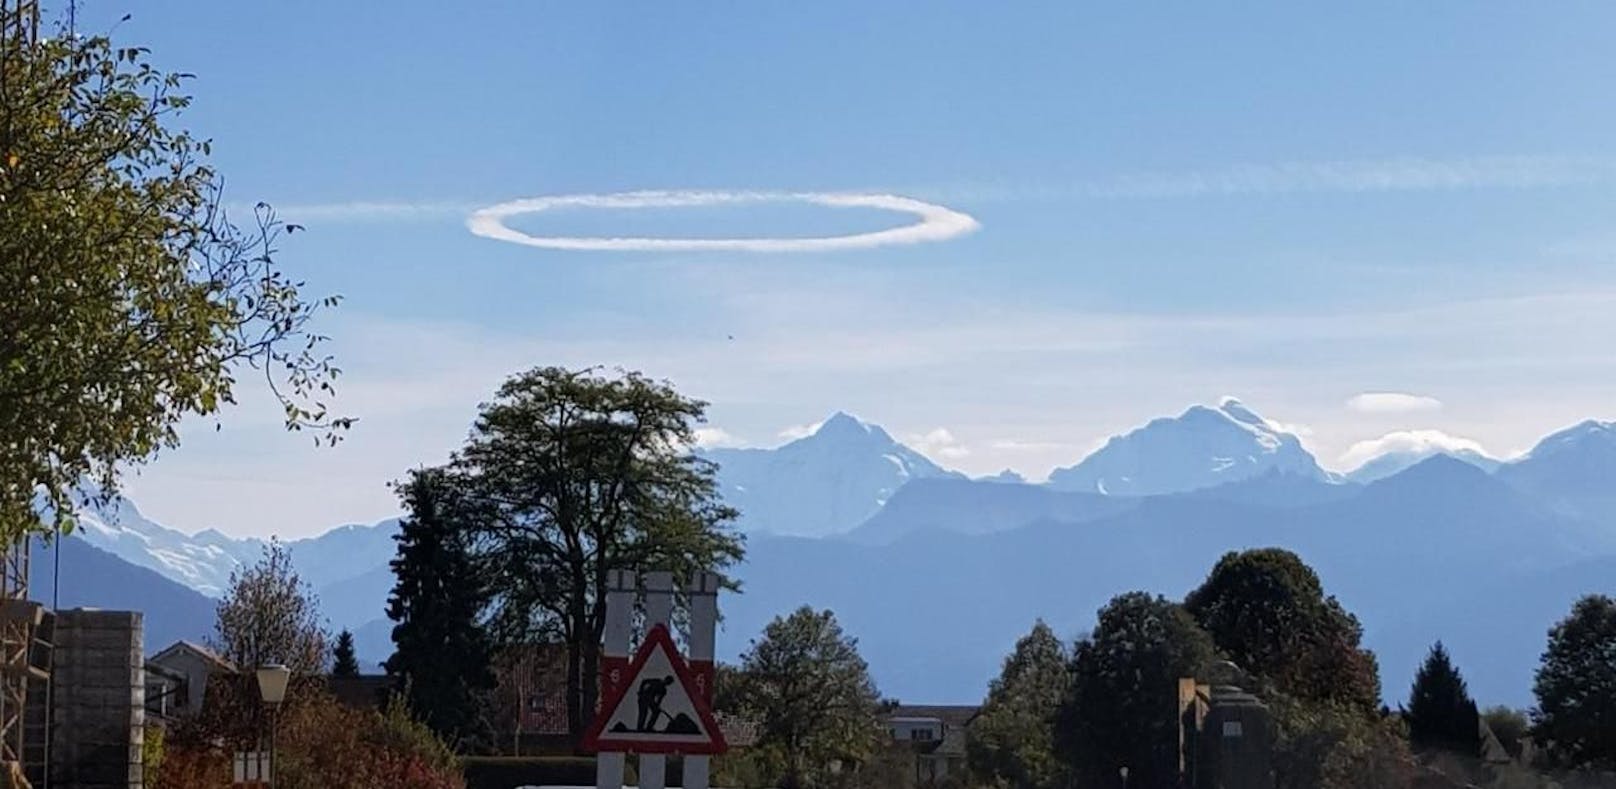 Stundenlang wunderten sich die Schweizer, was das für eine seltsame Wolke sei.